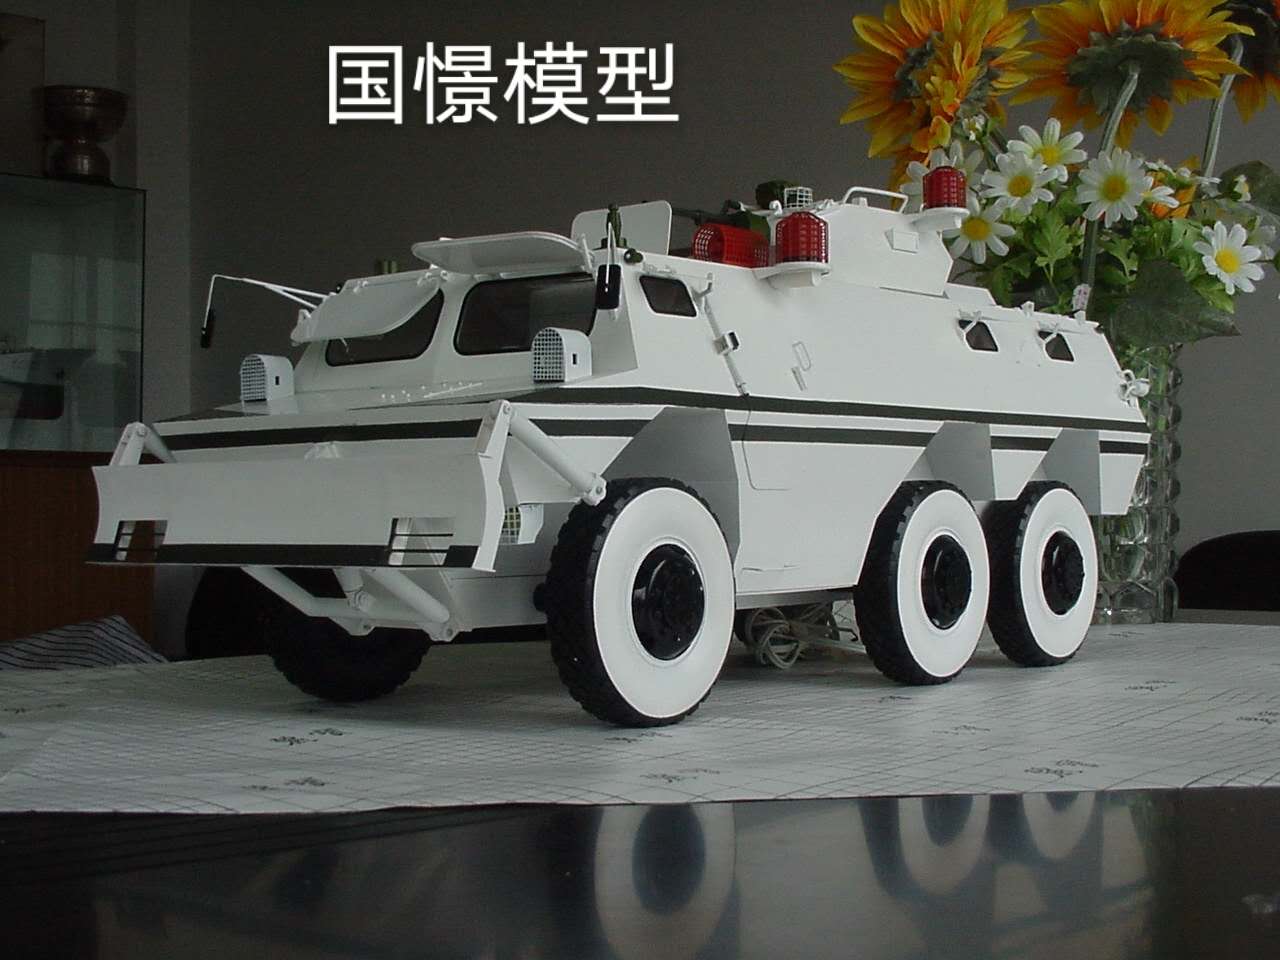 丰林县军事模型